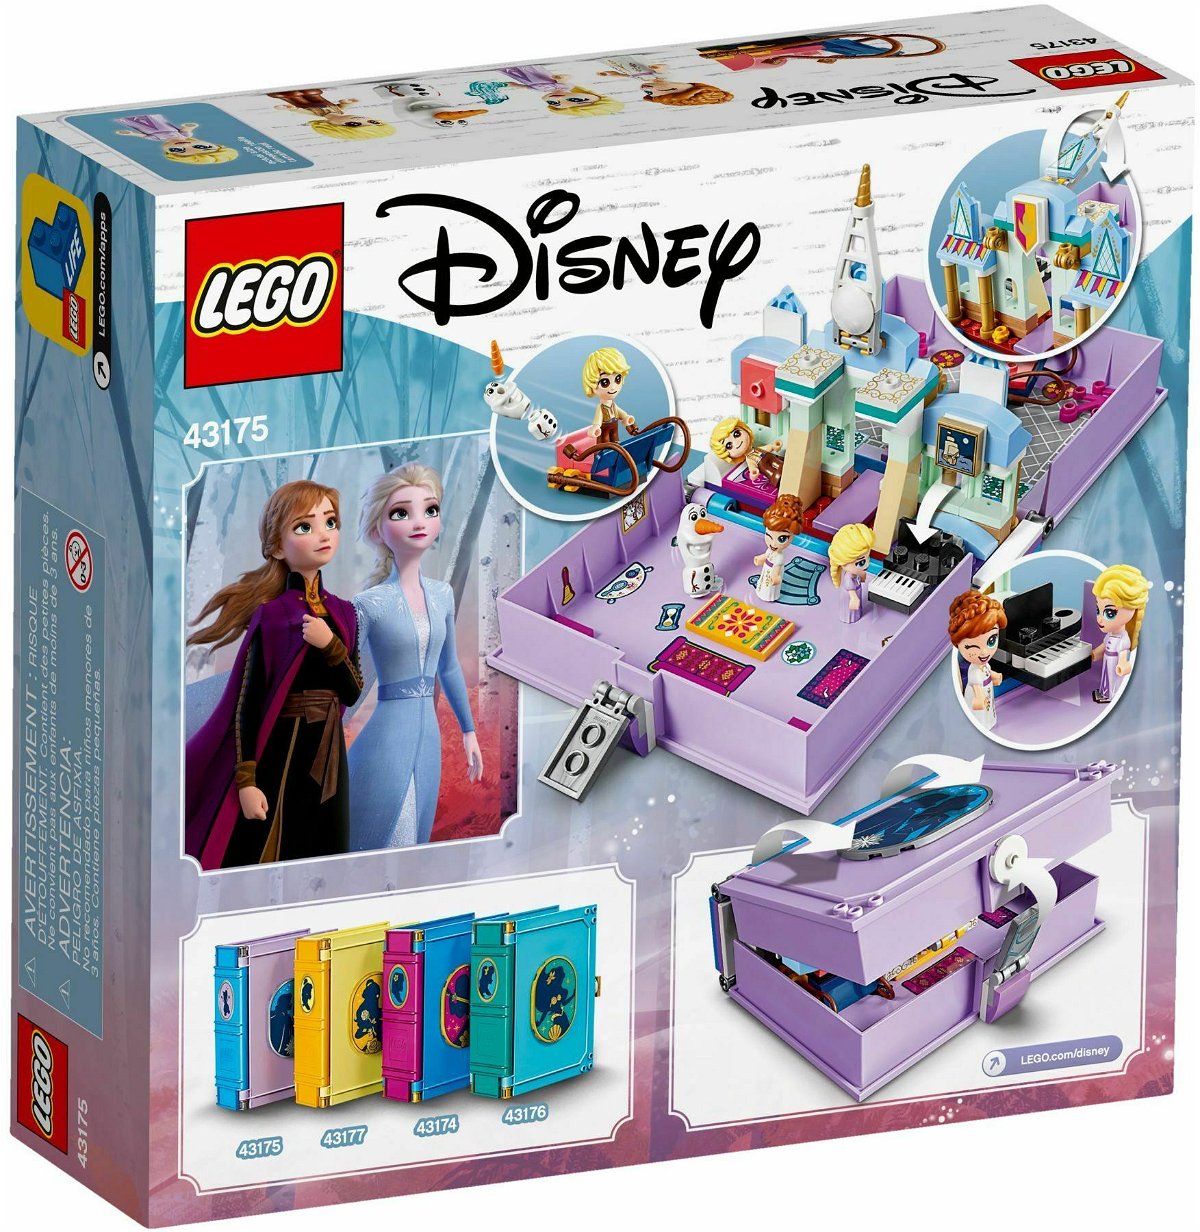 Il retro della scatola del LEGO set Frozen 2 Il libro delle fiabe di Elsa e Anna